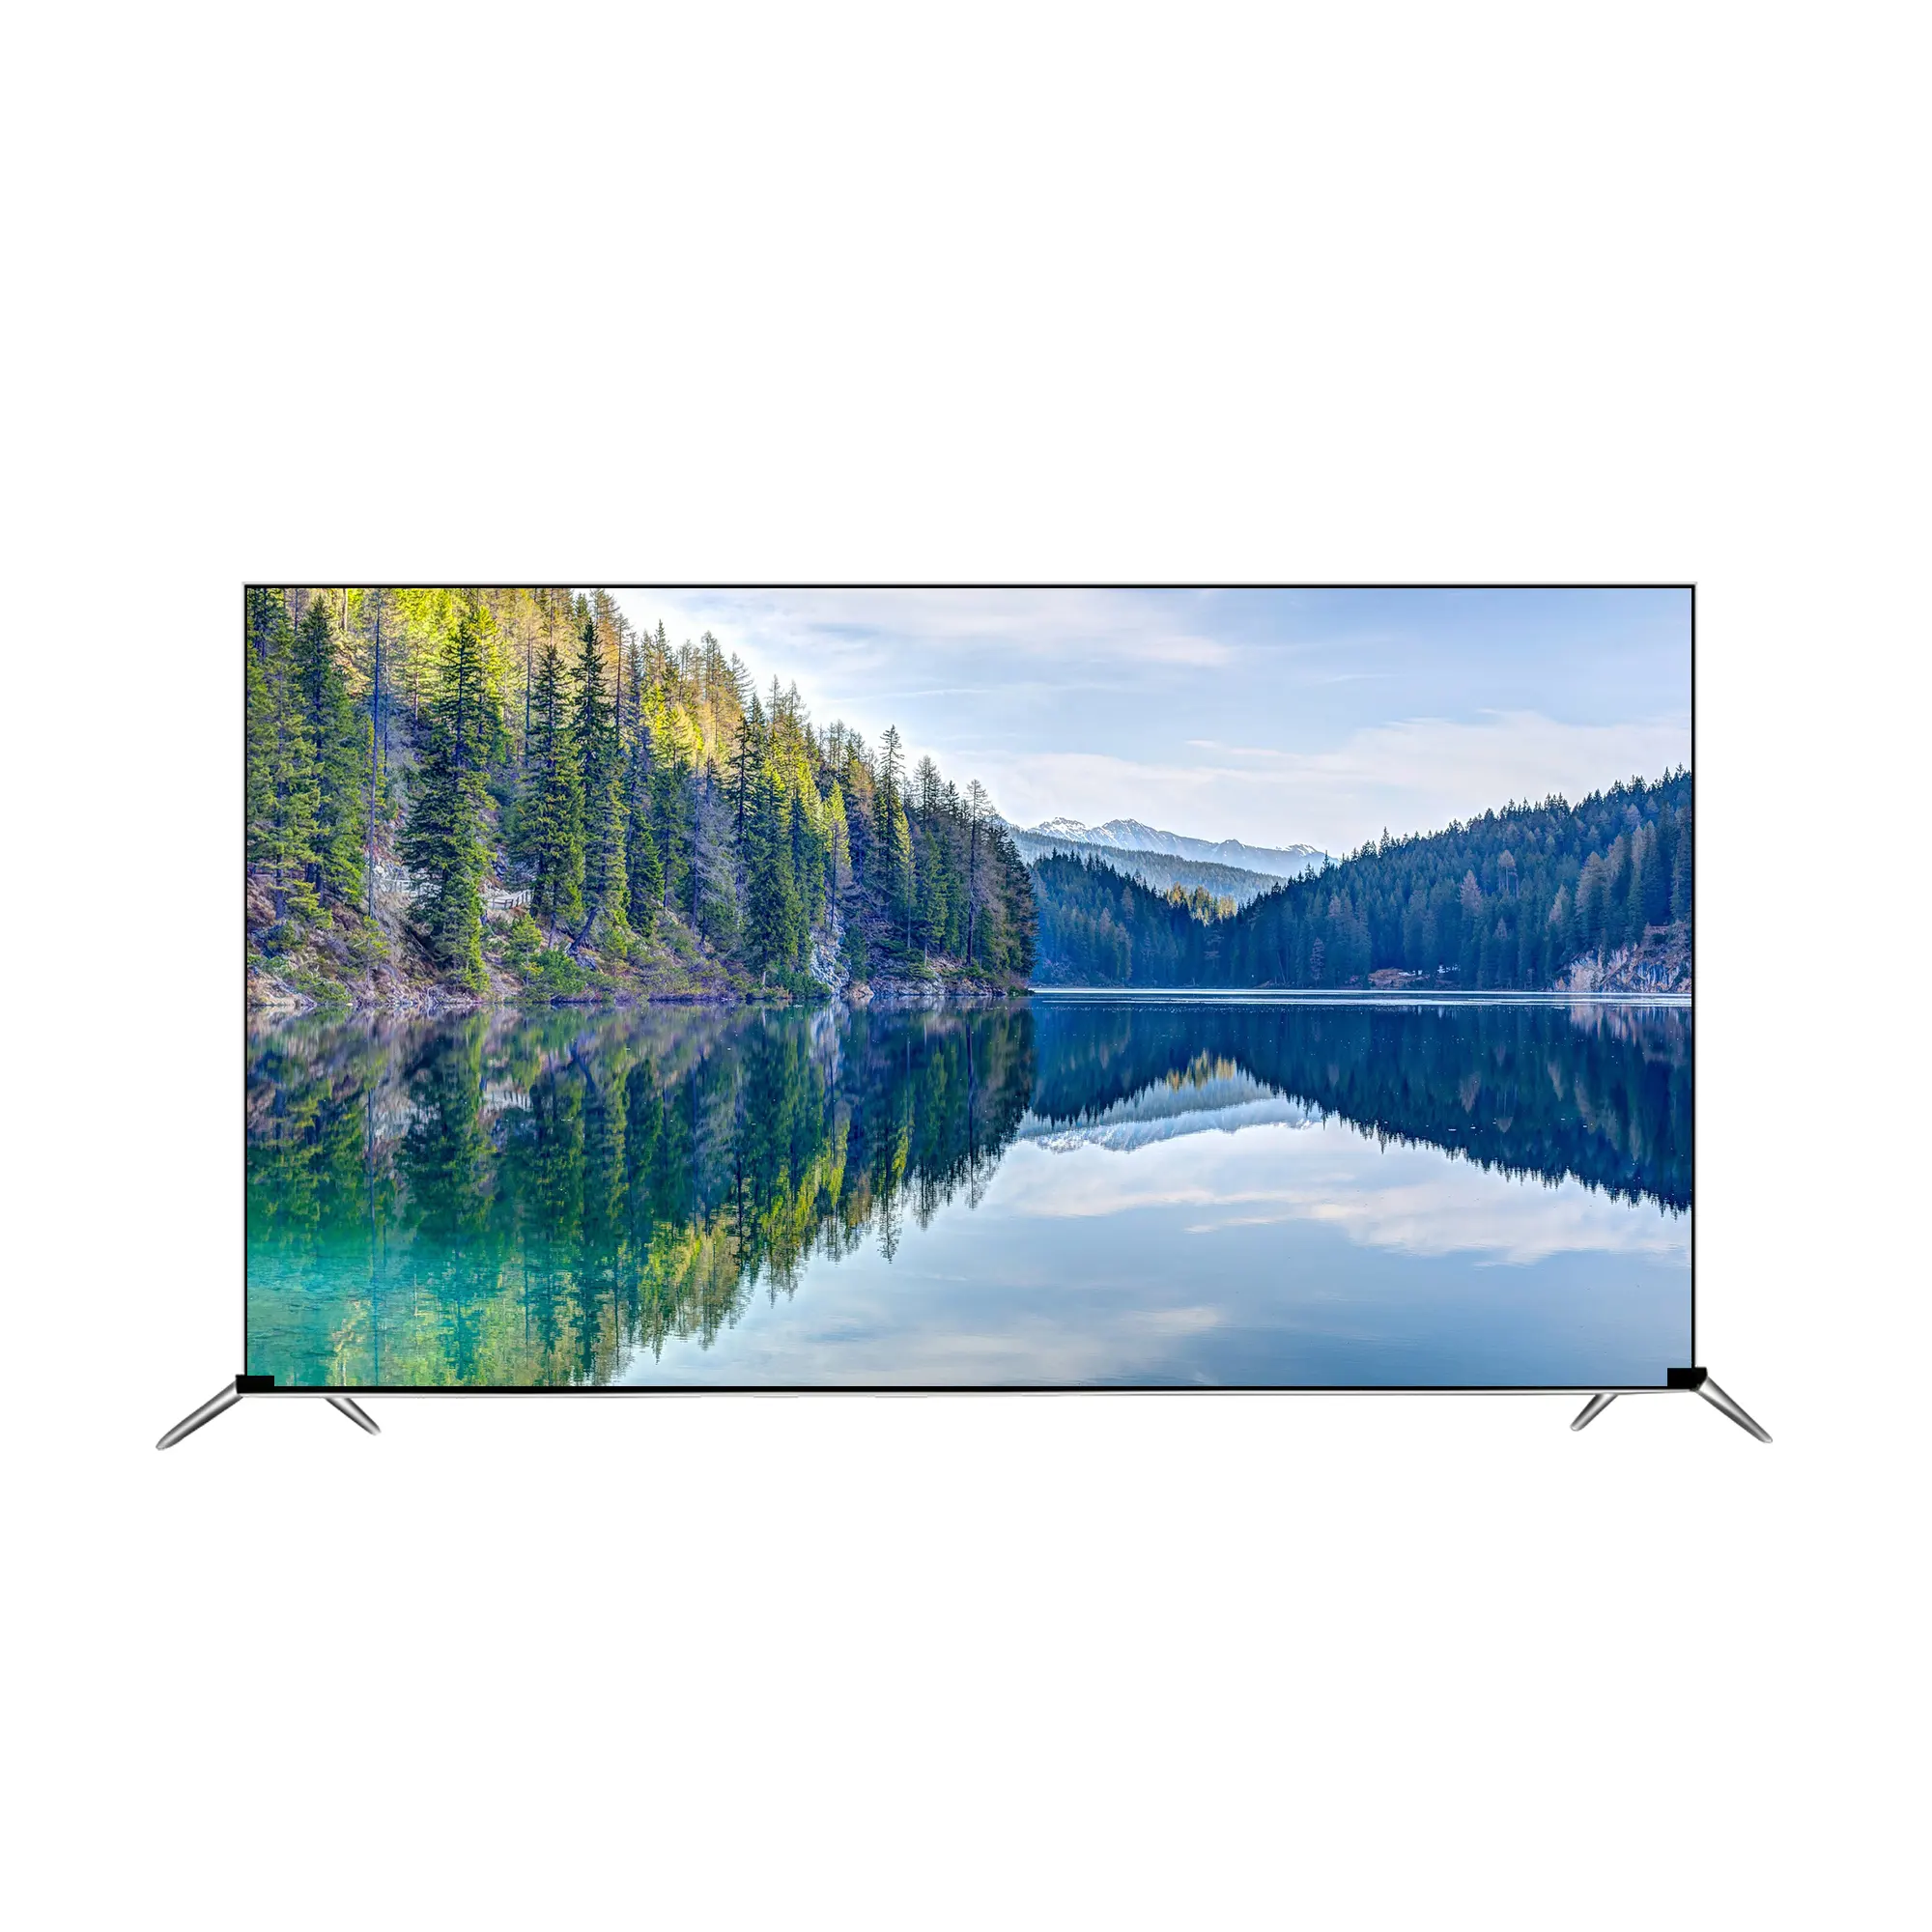 Ультра-HD OLED-телевизор 4K! 65 дюймов 4K умный Браслет OLED ТВ с версией Android системы ТВ